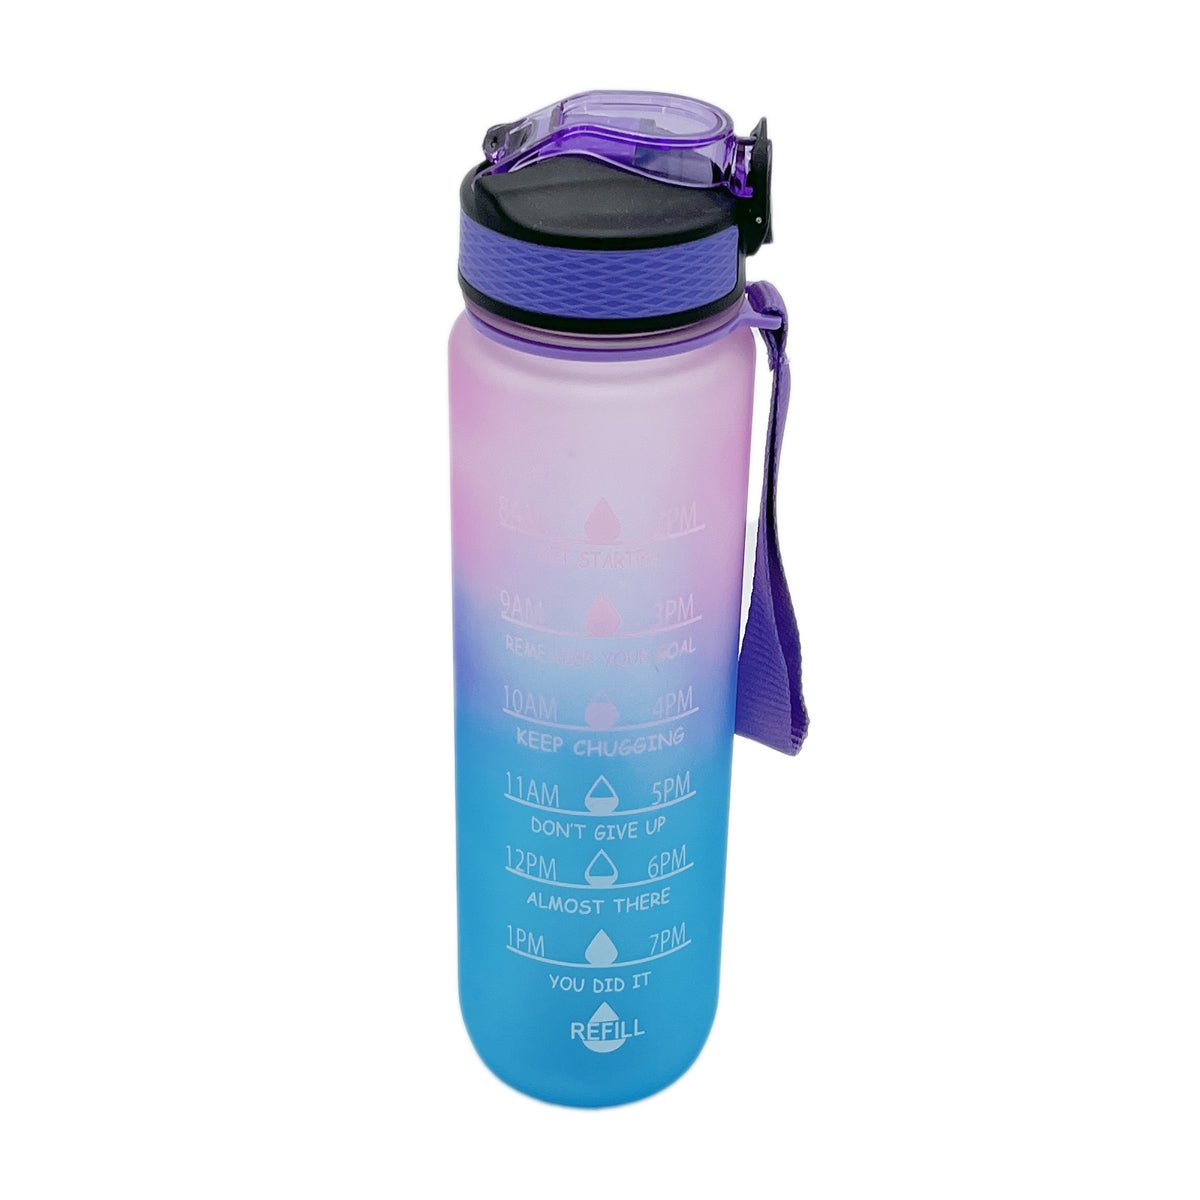 32 oz Clear, BPA Free Sports Water Bottle, Tritan BPA Free